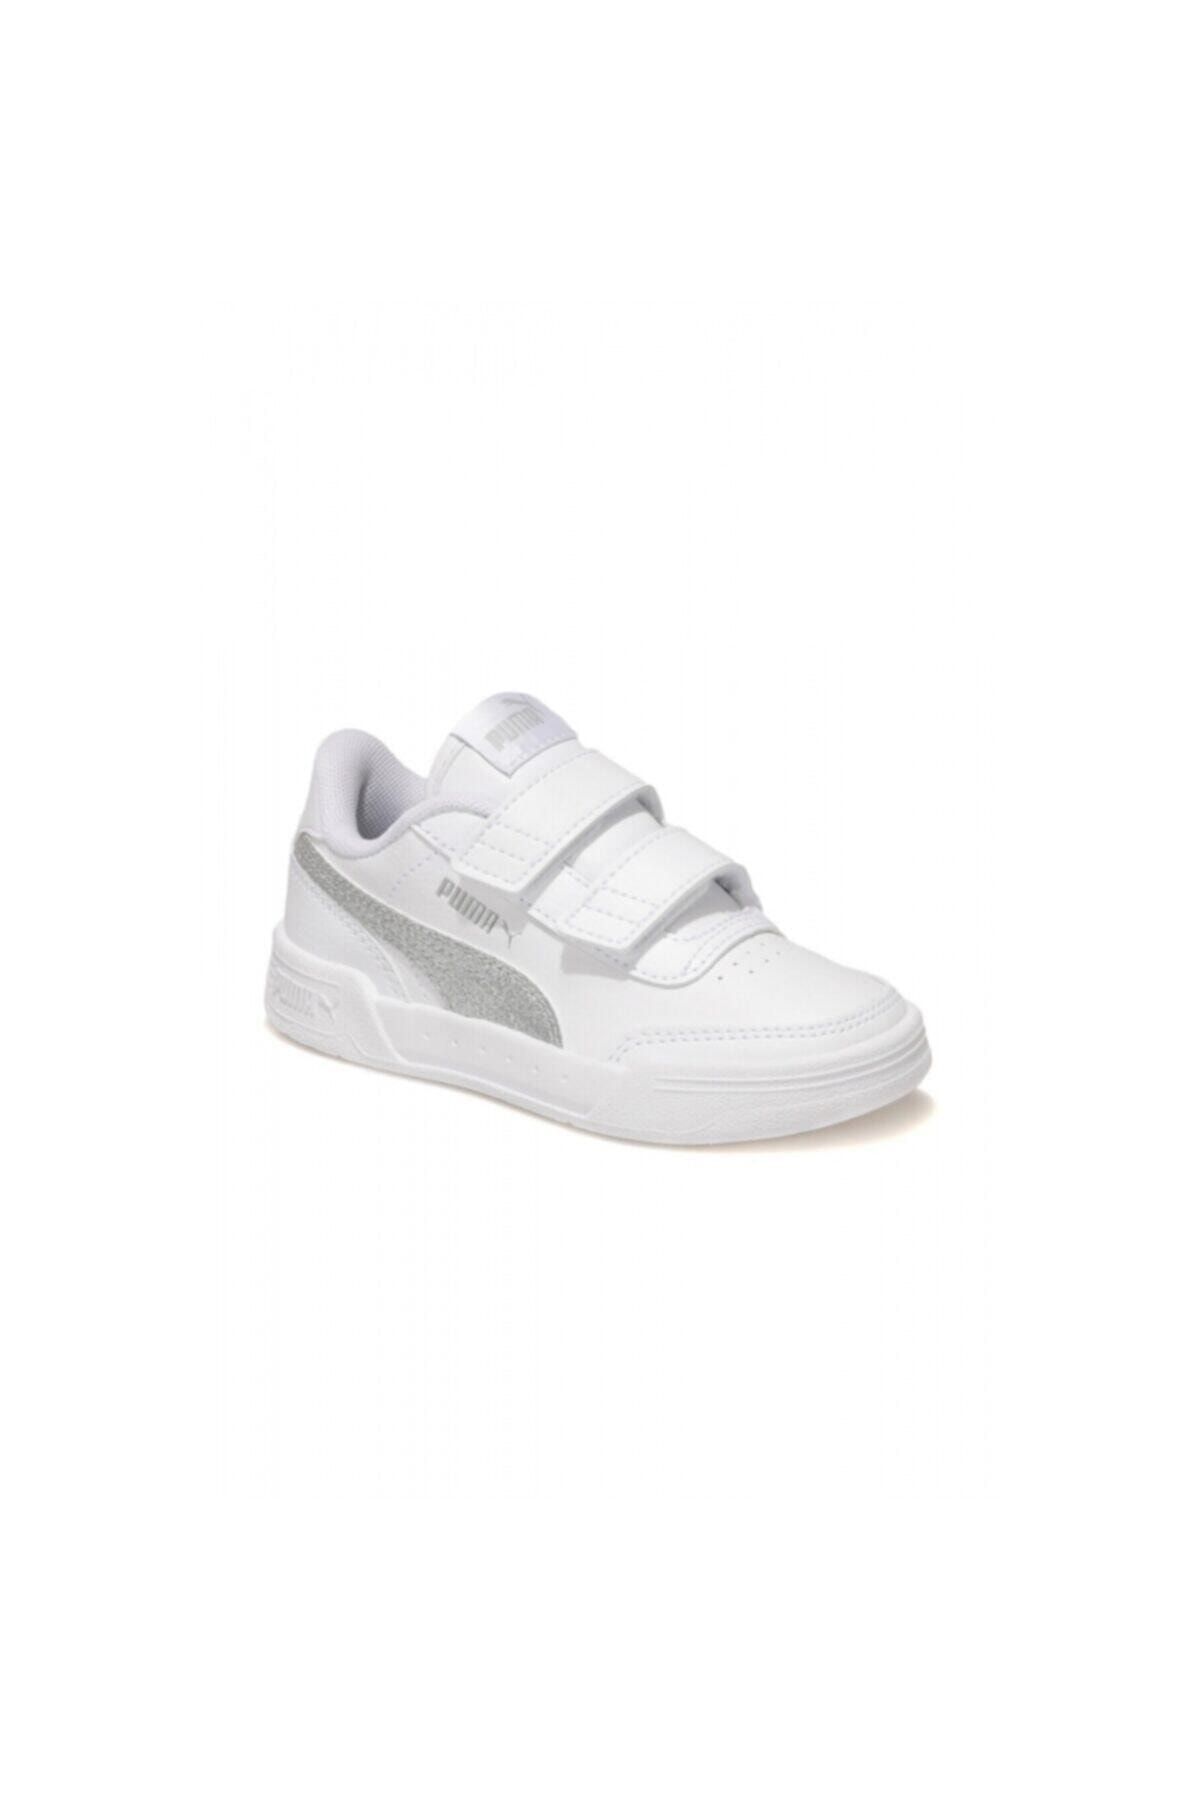 Puma CARACAL GLITTER V PS Beyaz Kız Çocuk Sneaker Ayakkabı 101085356